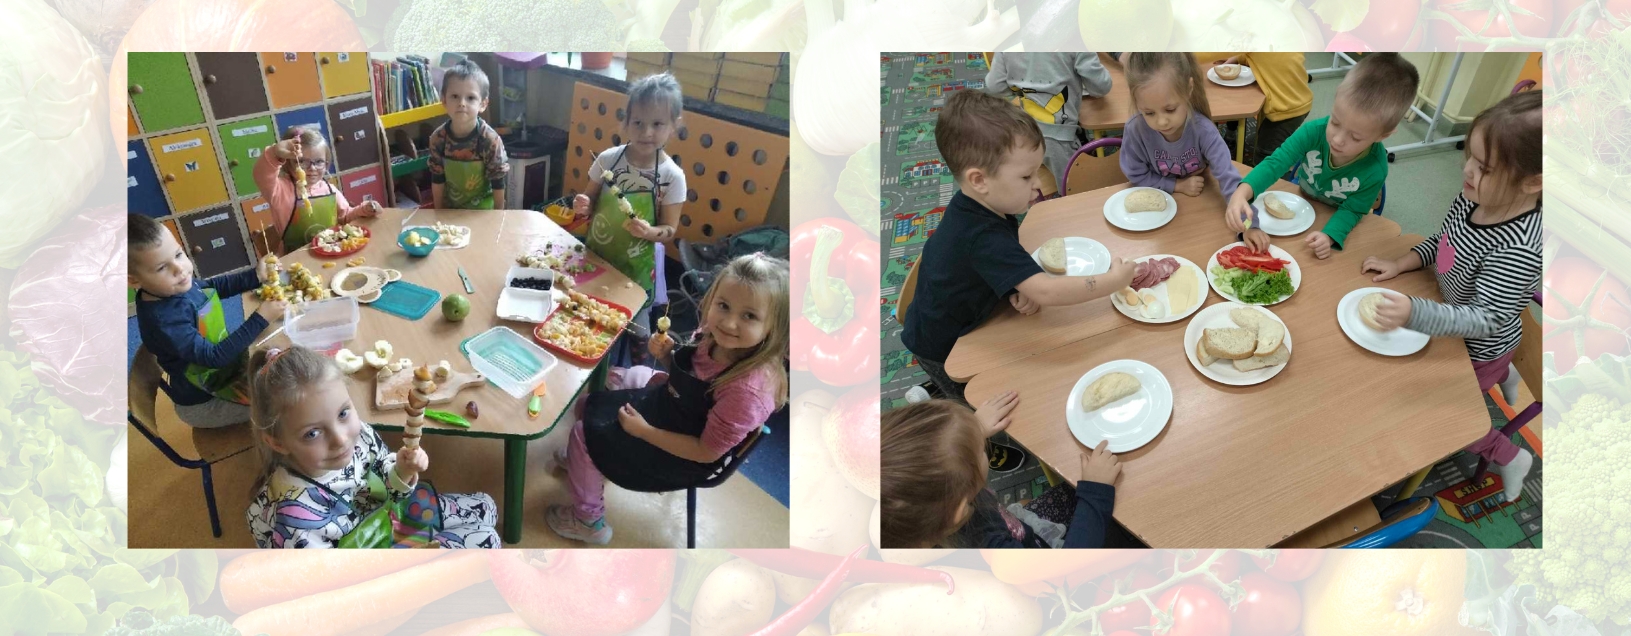 Przedszkolaki przygotowują zdrowe posiłki.jpg